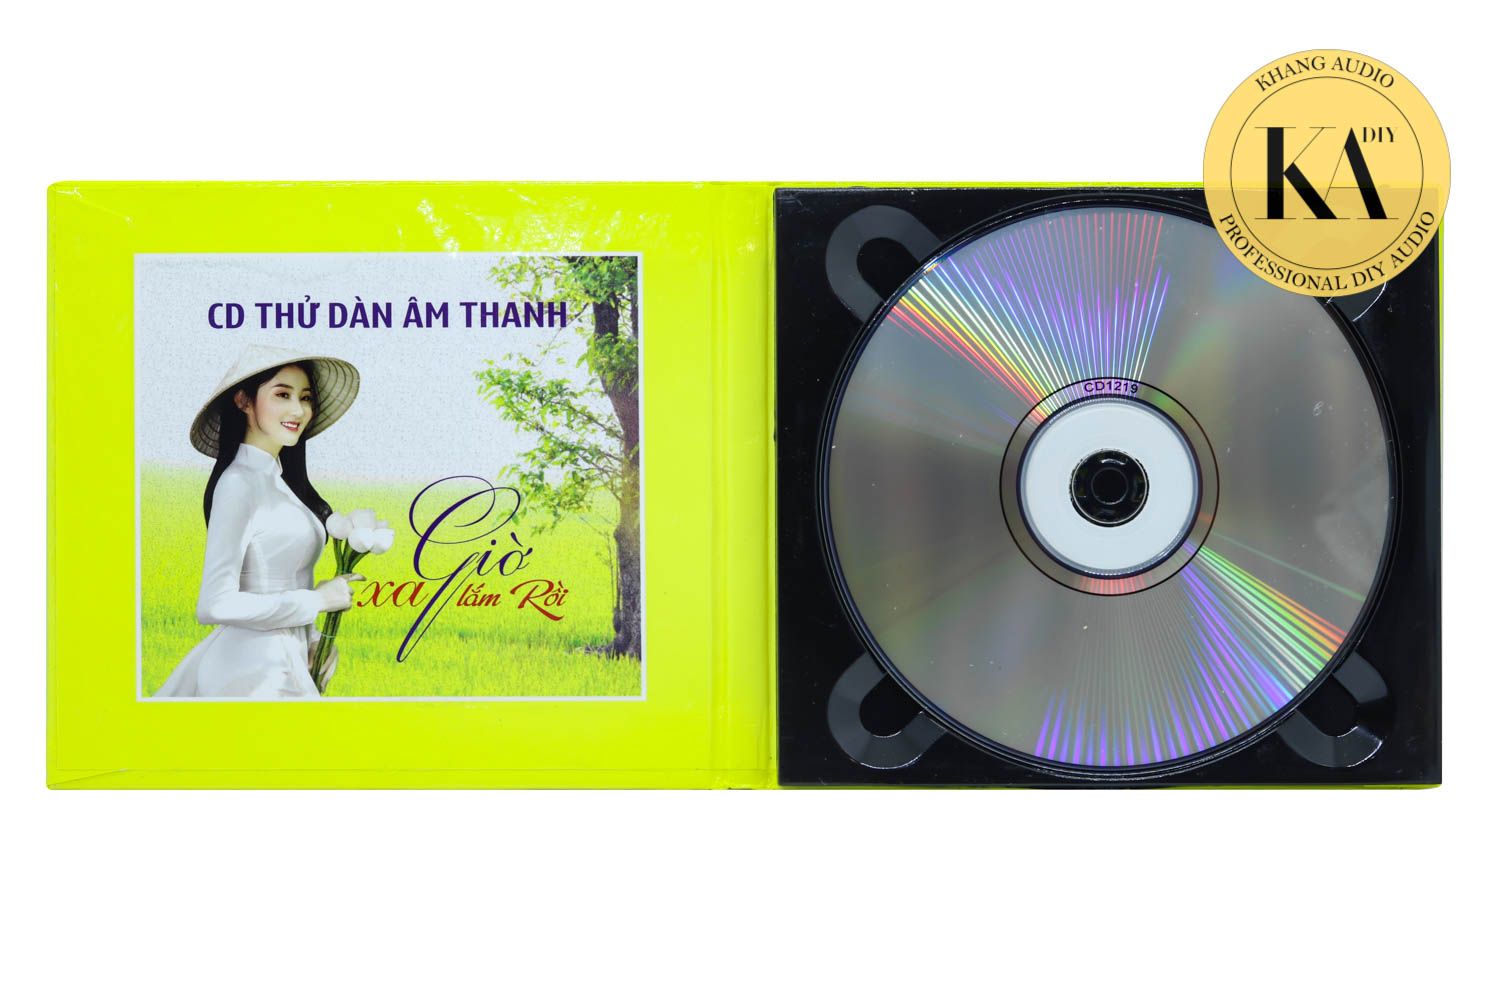 Giờ Xa Lắm Rồi - CD Thử Dàn Âm Thanh Khang Audio 0336380099